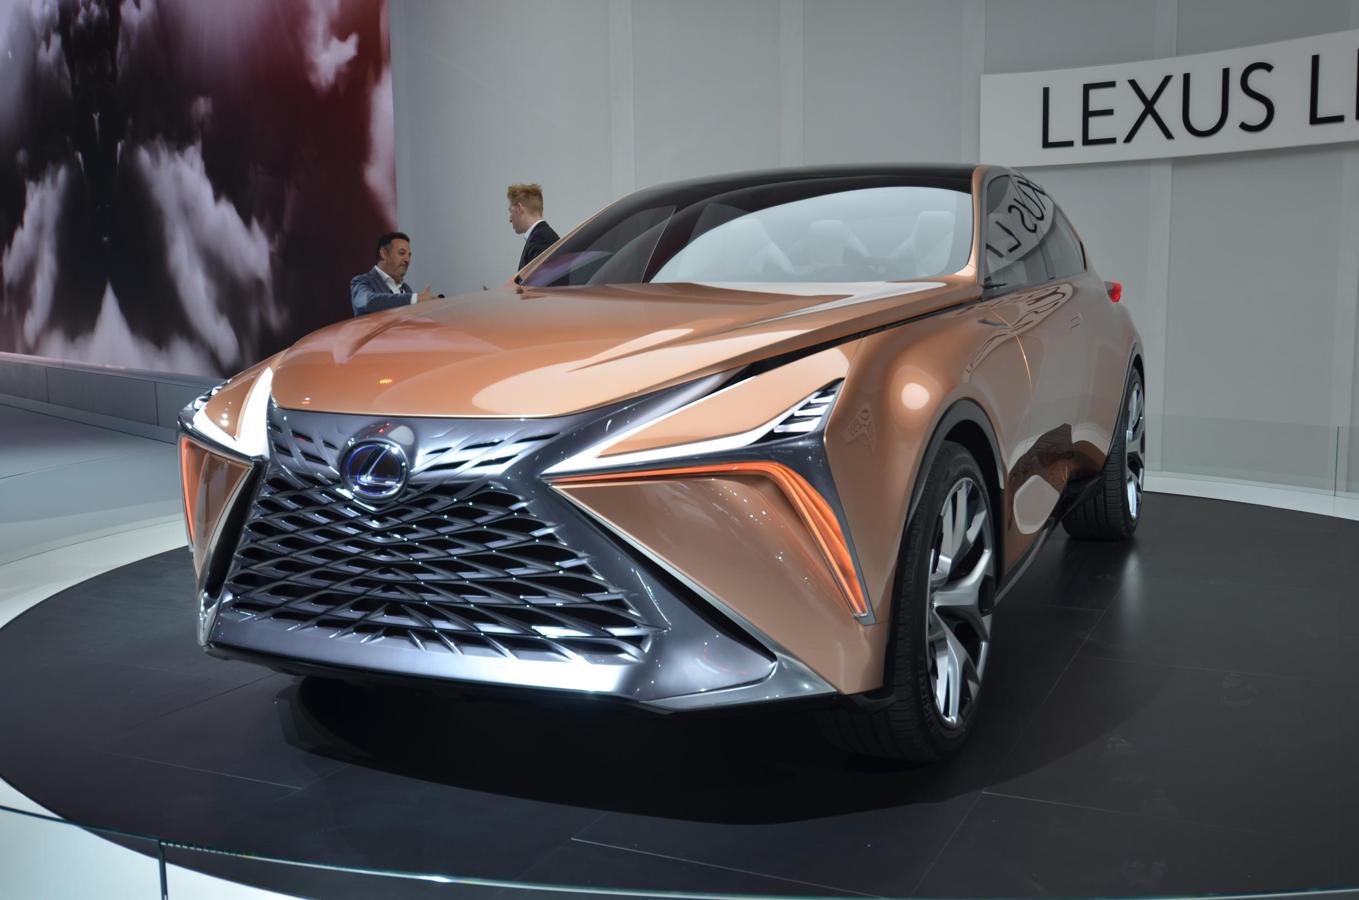 Este propotipo nos adelanta lo que los ingenieros de Lexus tienen pensado para el futuro de la marca.